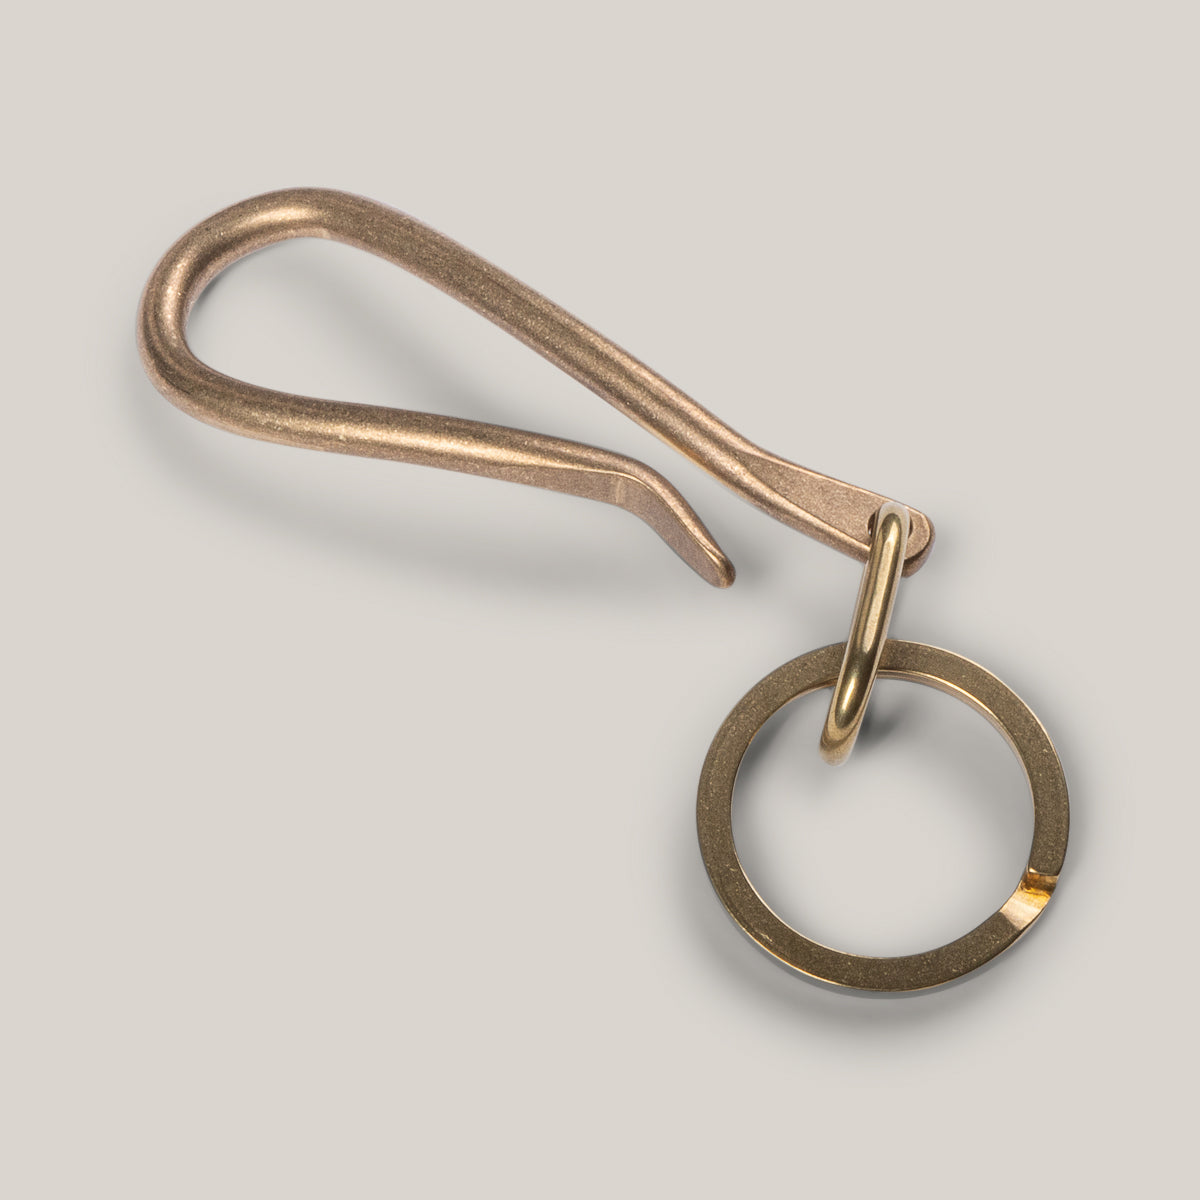 Japanese Brass Multi-key Hook – Imogene Willie, 44% OFF